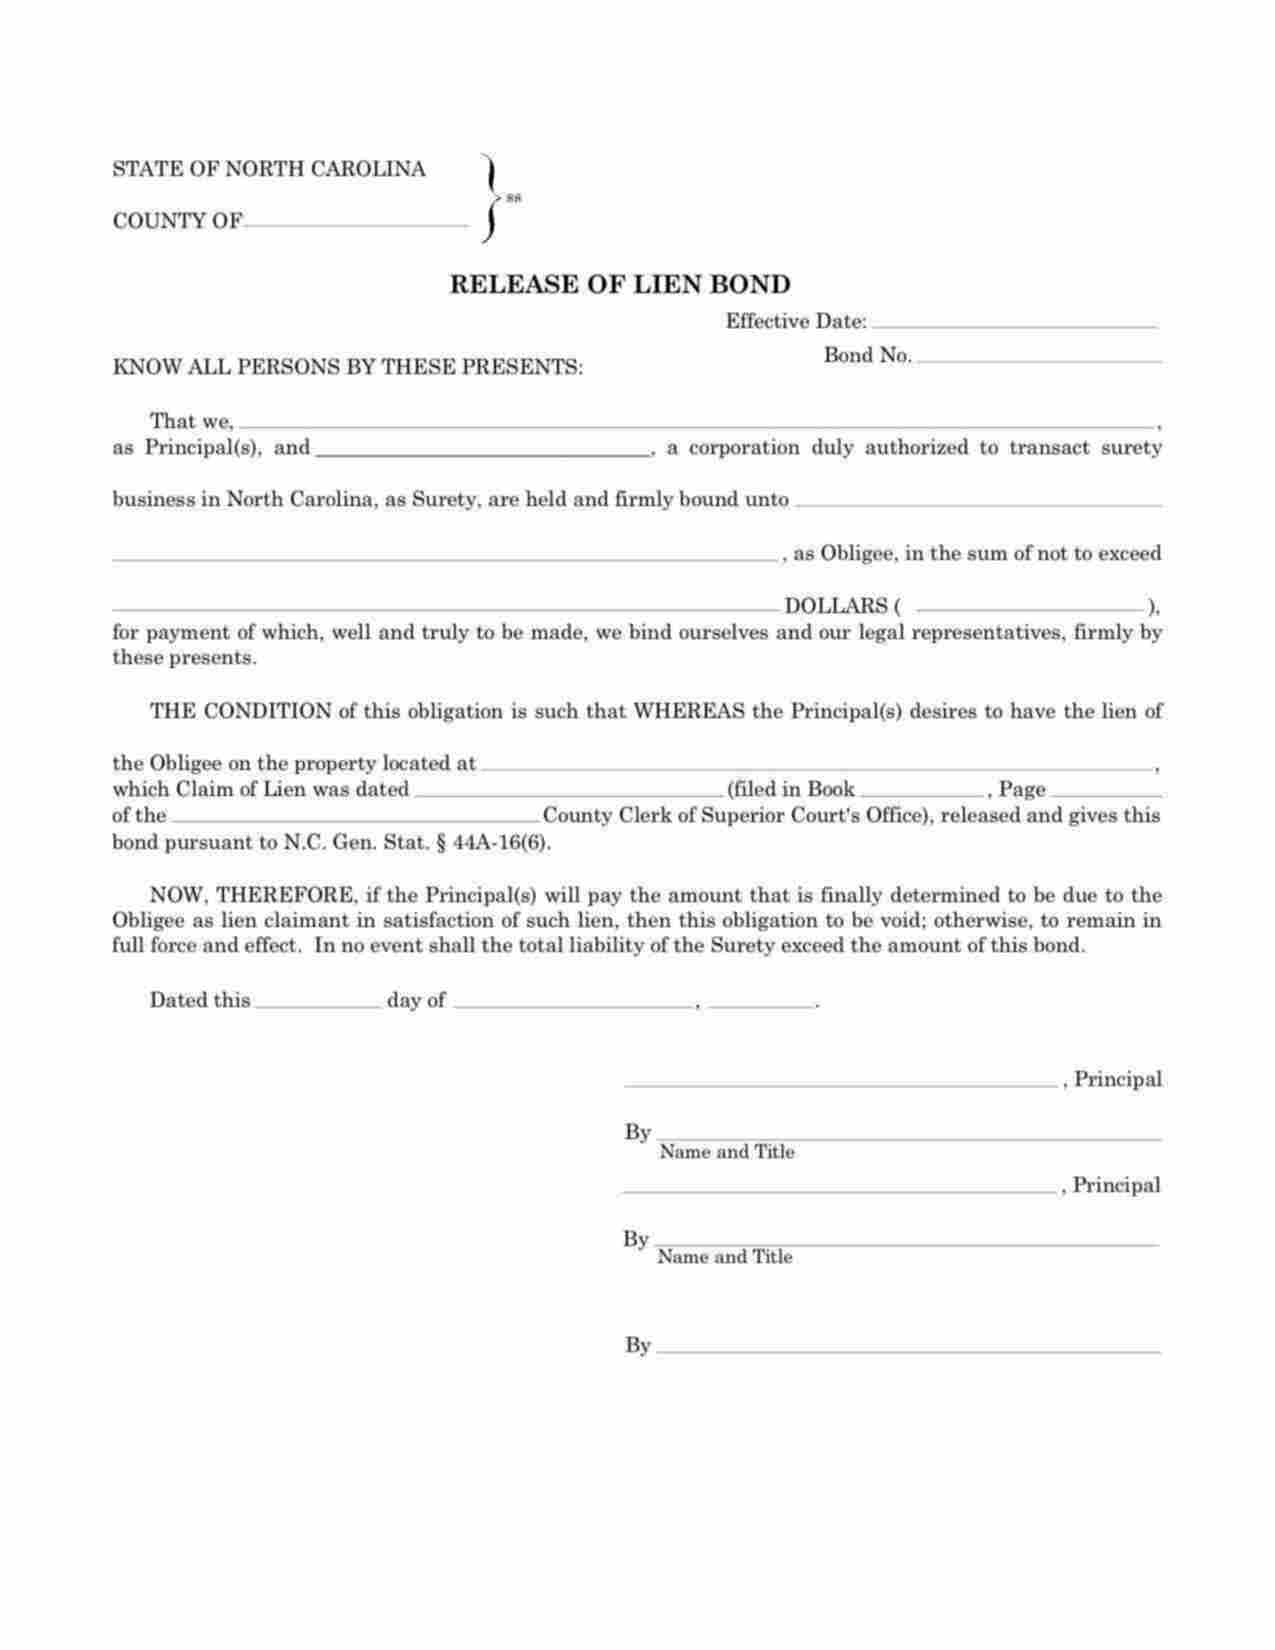 North Carolina Release of Lien Bond Form